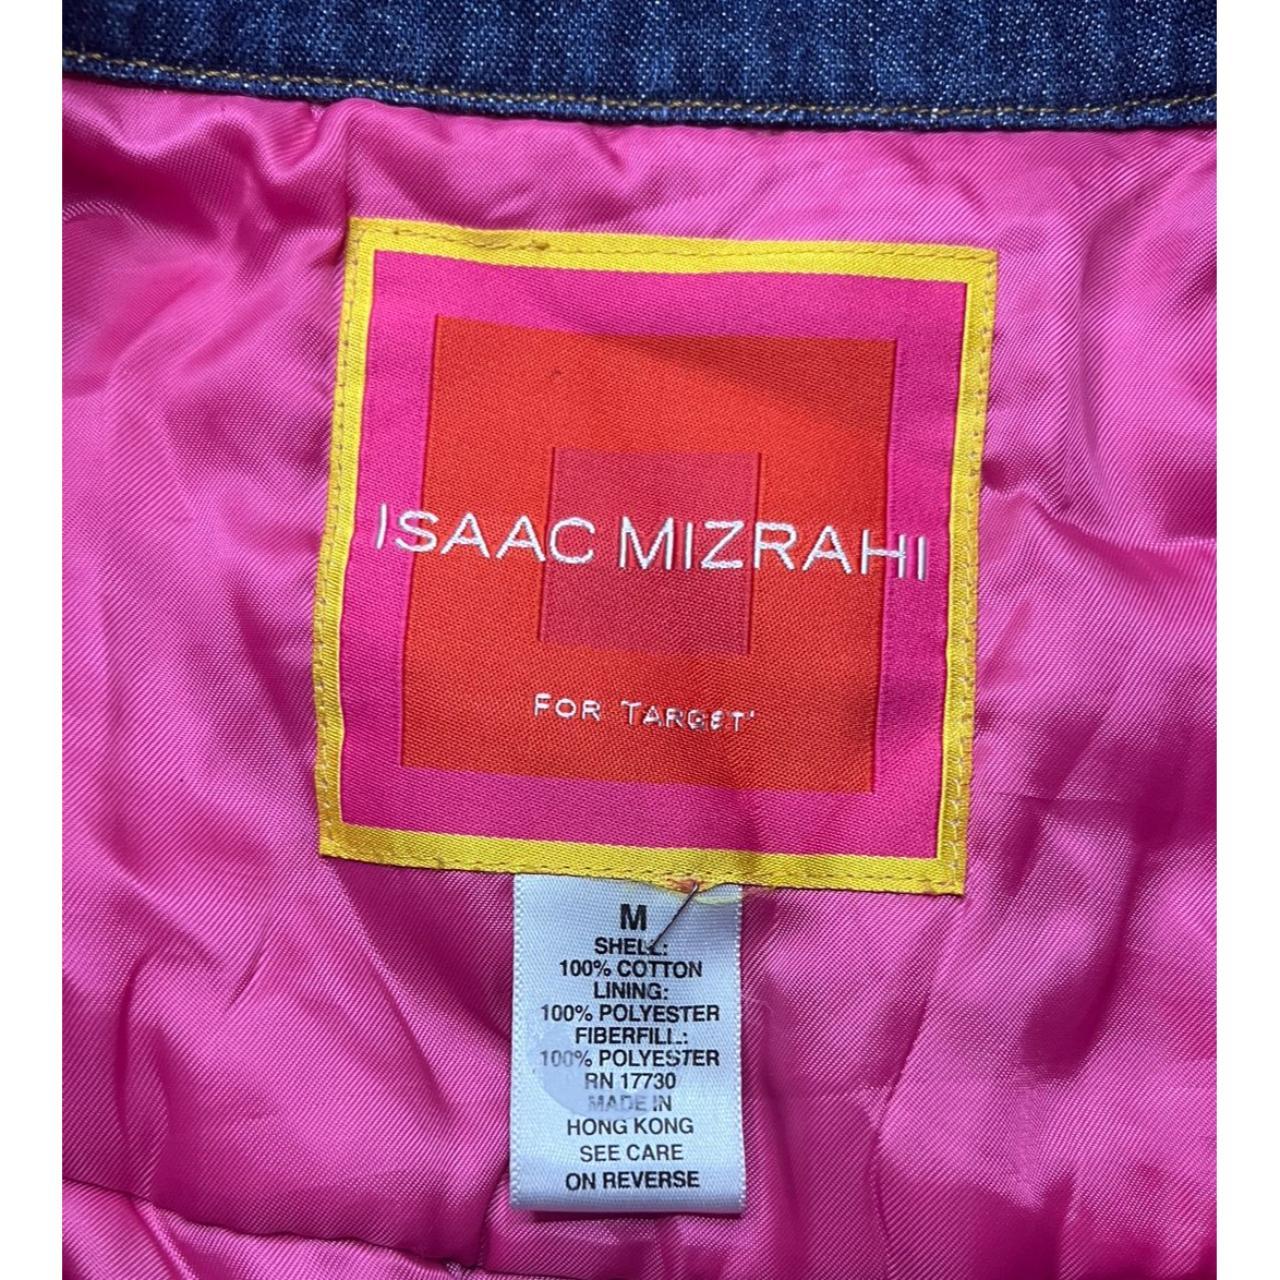 Isaac Mizrahi Target Pink Lined 